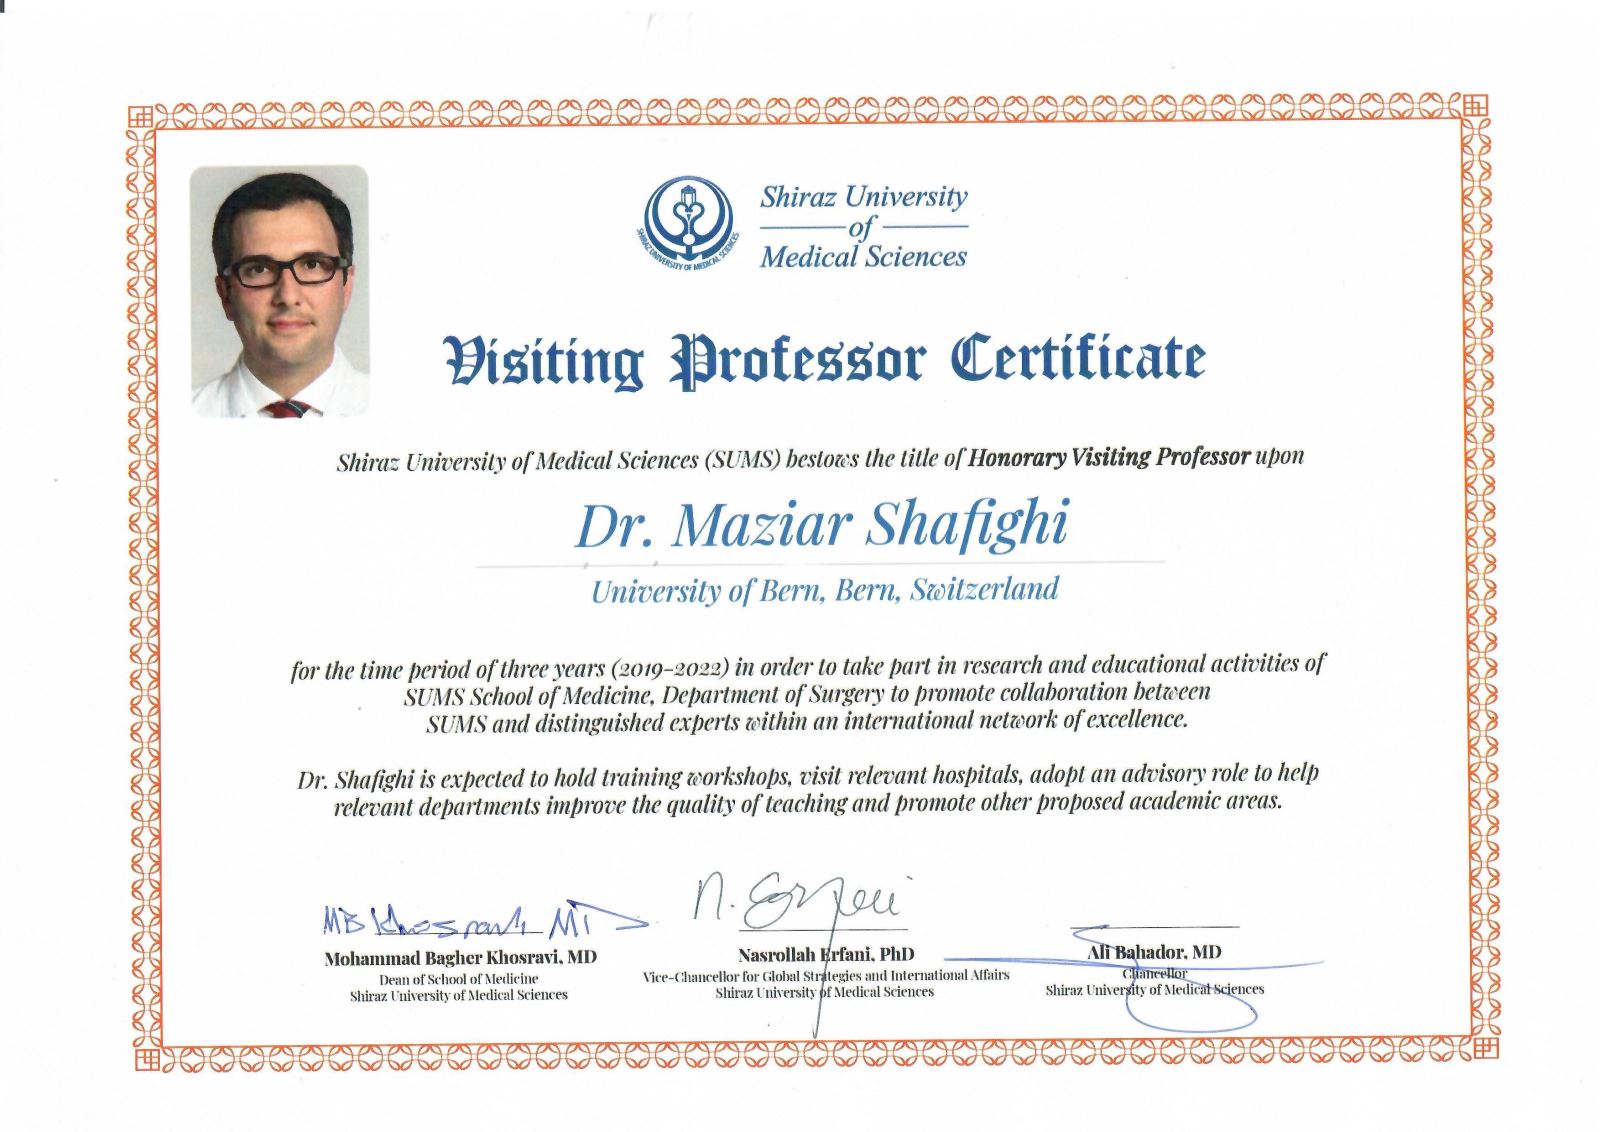 PD Dr. Maziar Shafighi	